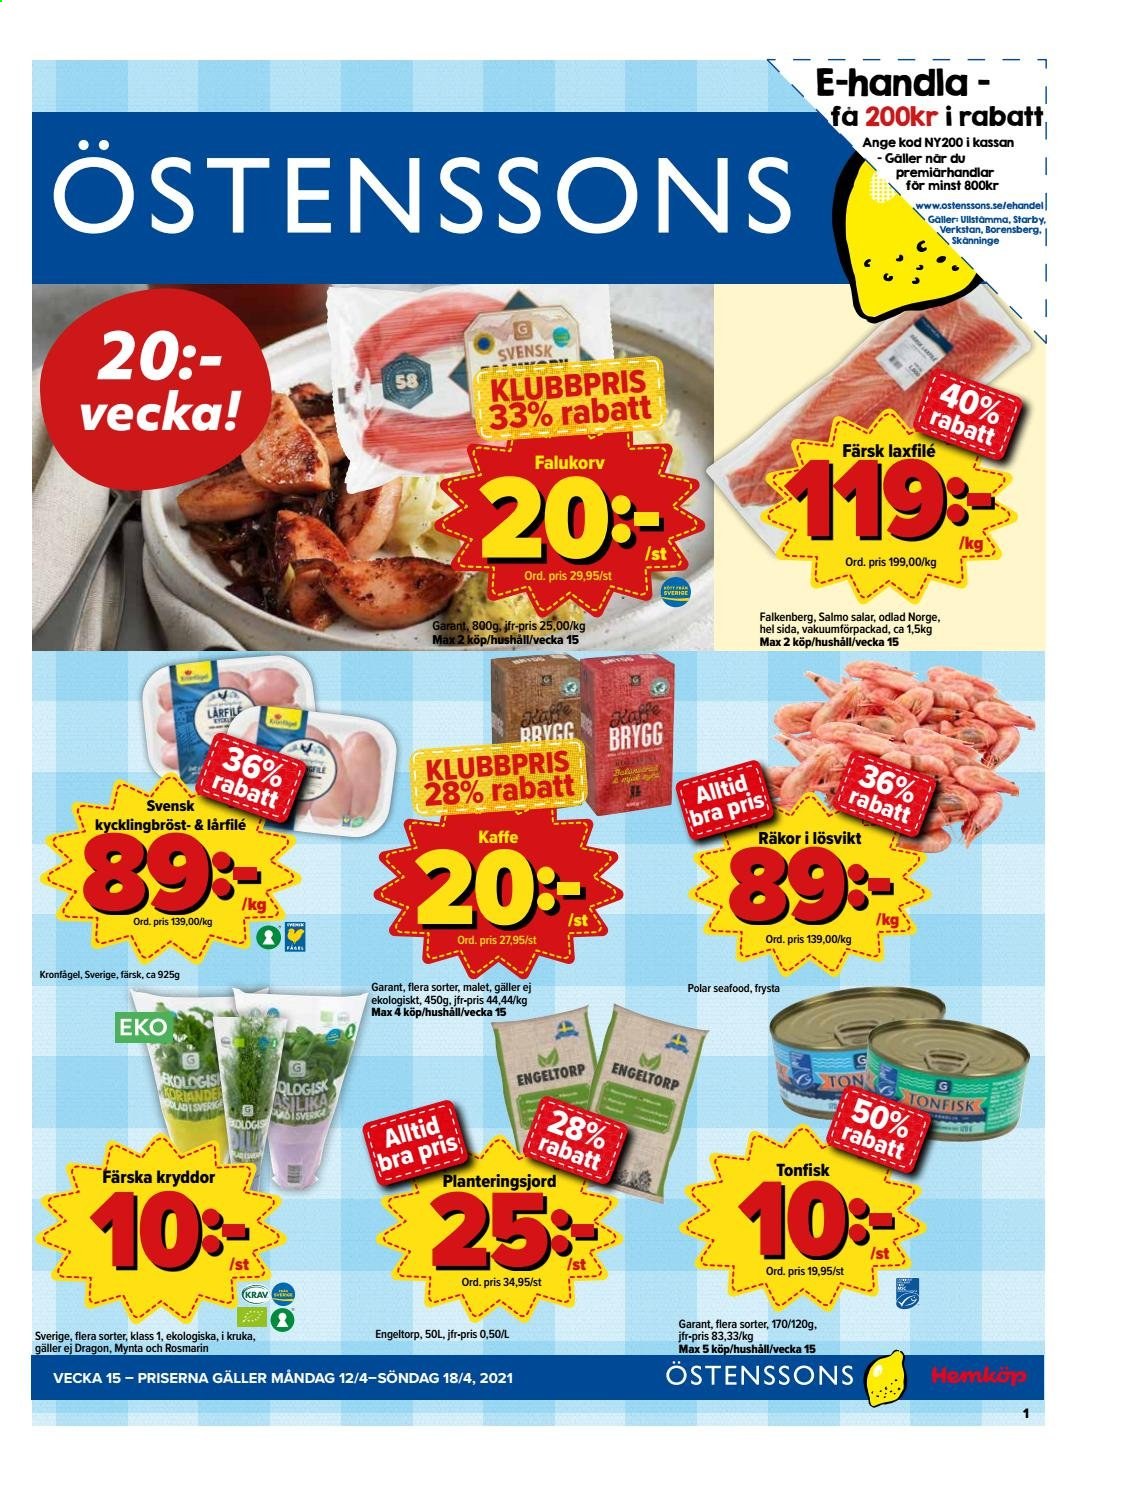 Östenssons reklamblad - 12/4 2021 - 18/4 2021.